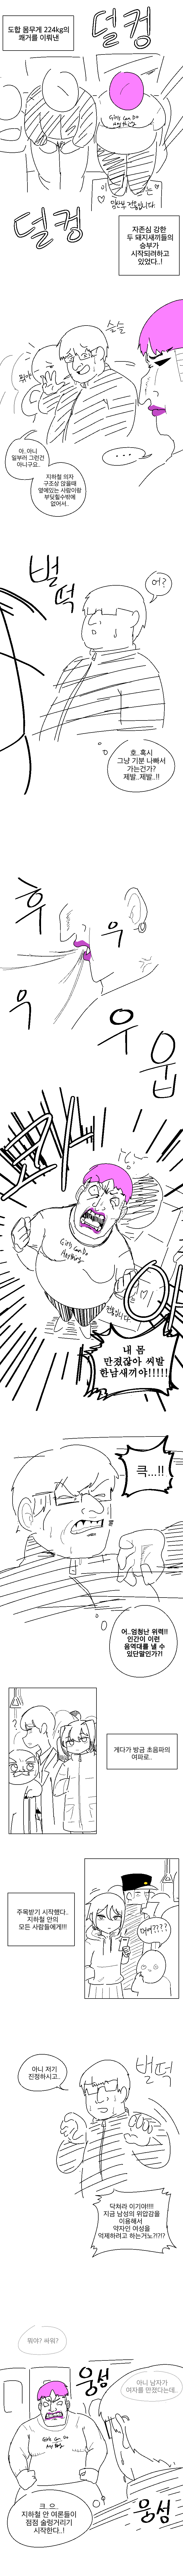 명작 만화) 페미vs오타쿠 세계관 최강자들의 싸움